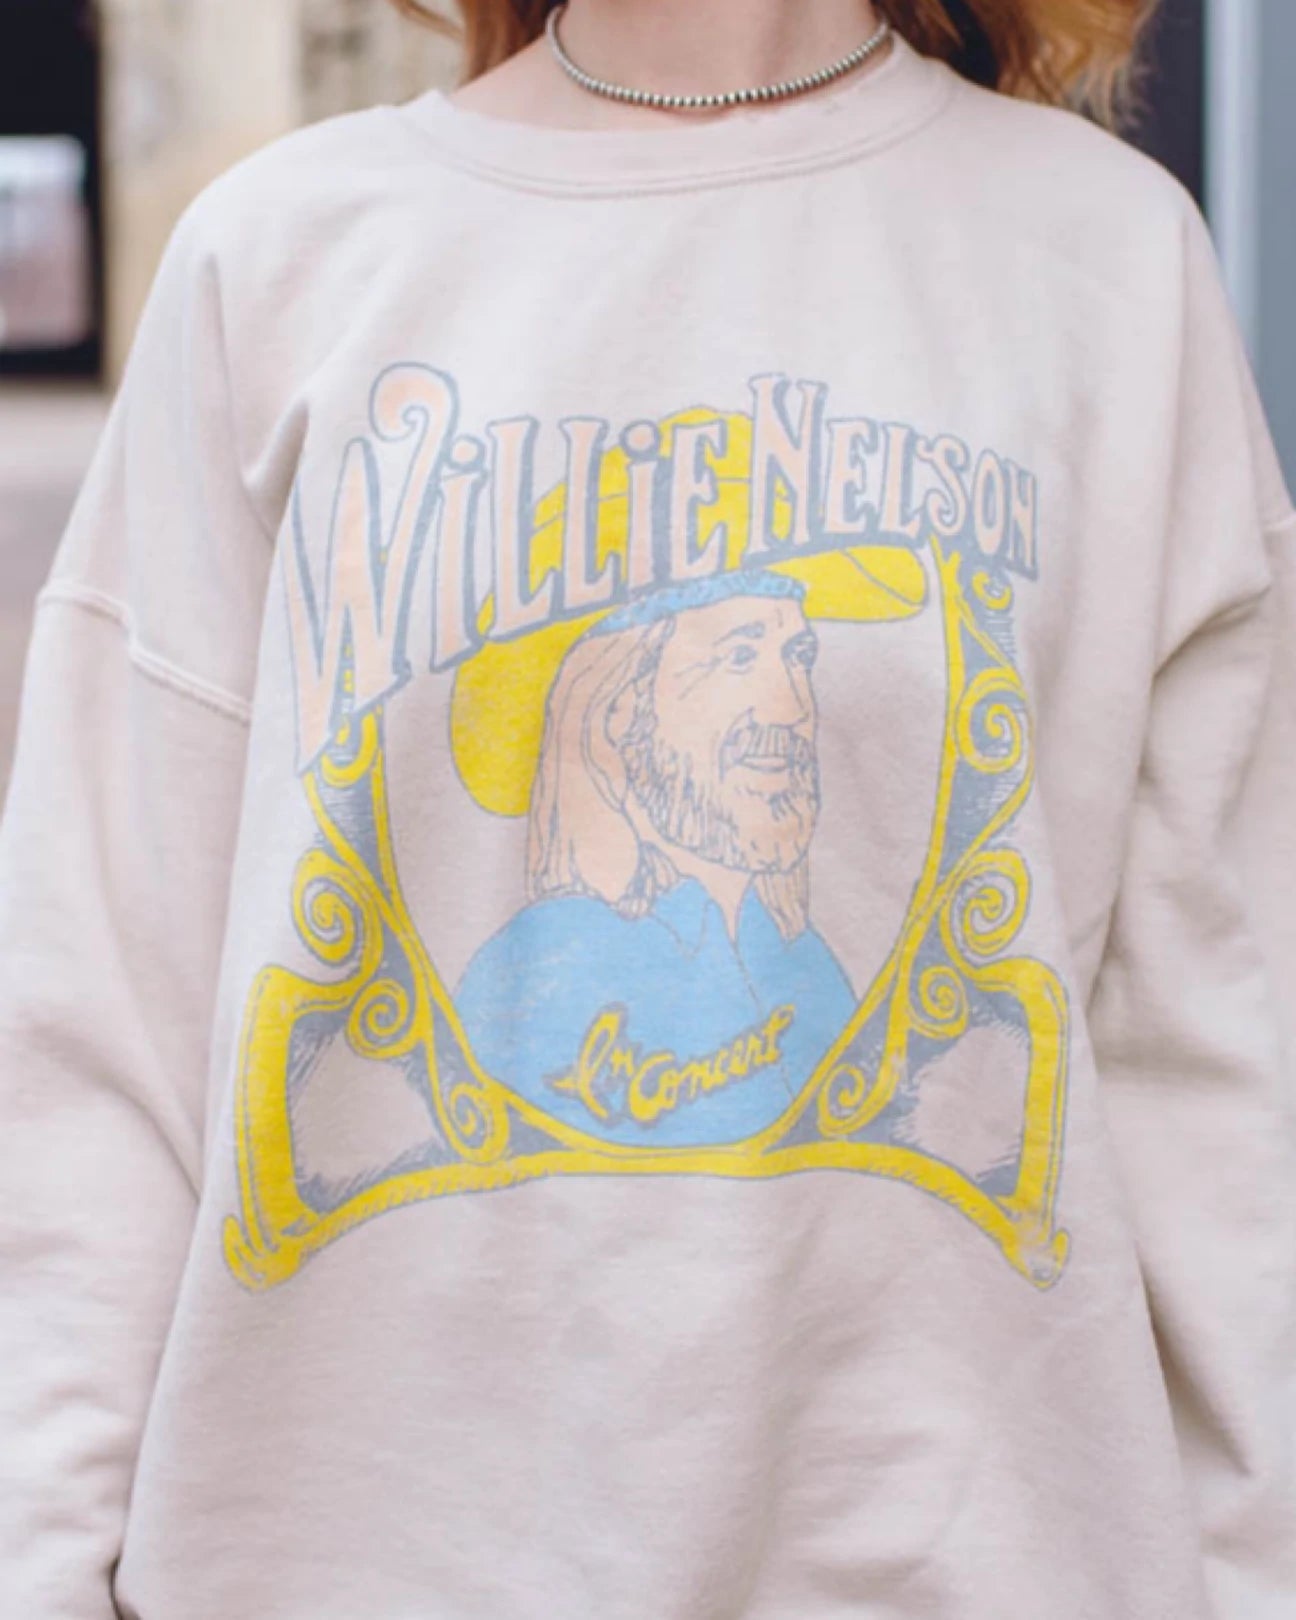 Willie Nelson in Concert Thrifted Sweatshirt - Sand